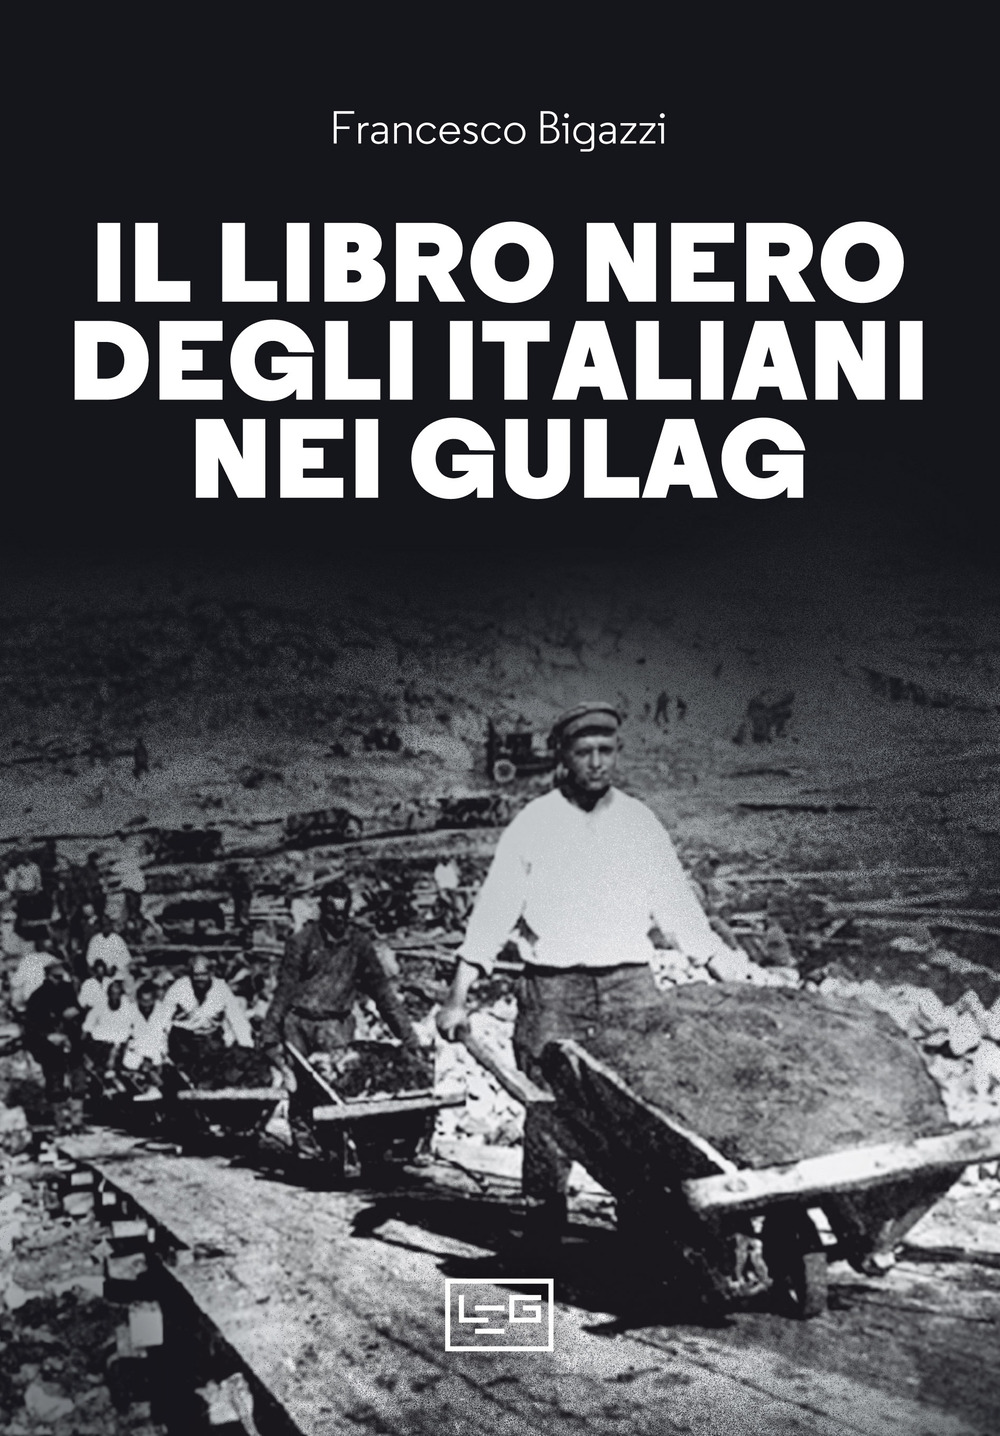 Image of Il libro nero degli italiani nei gulag